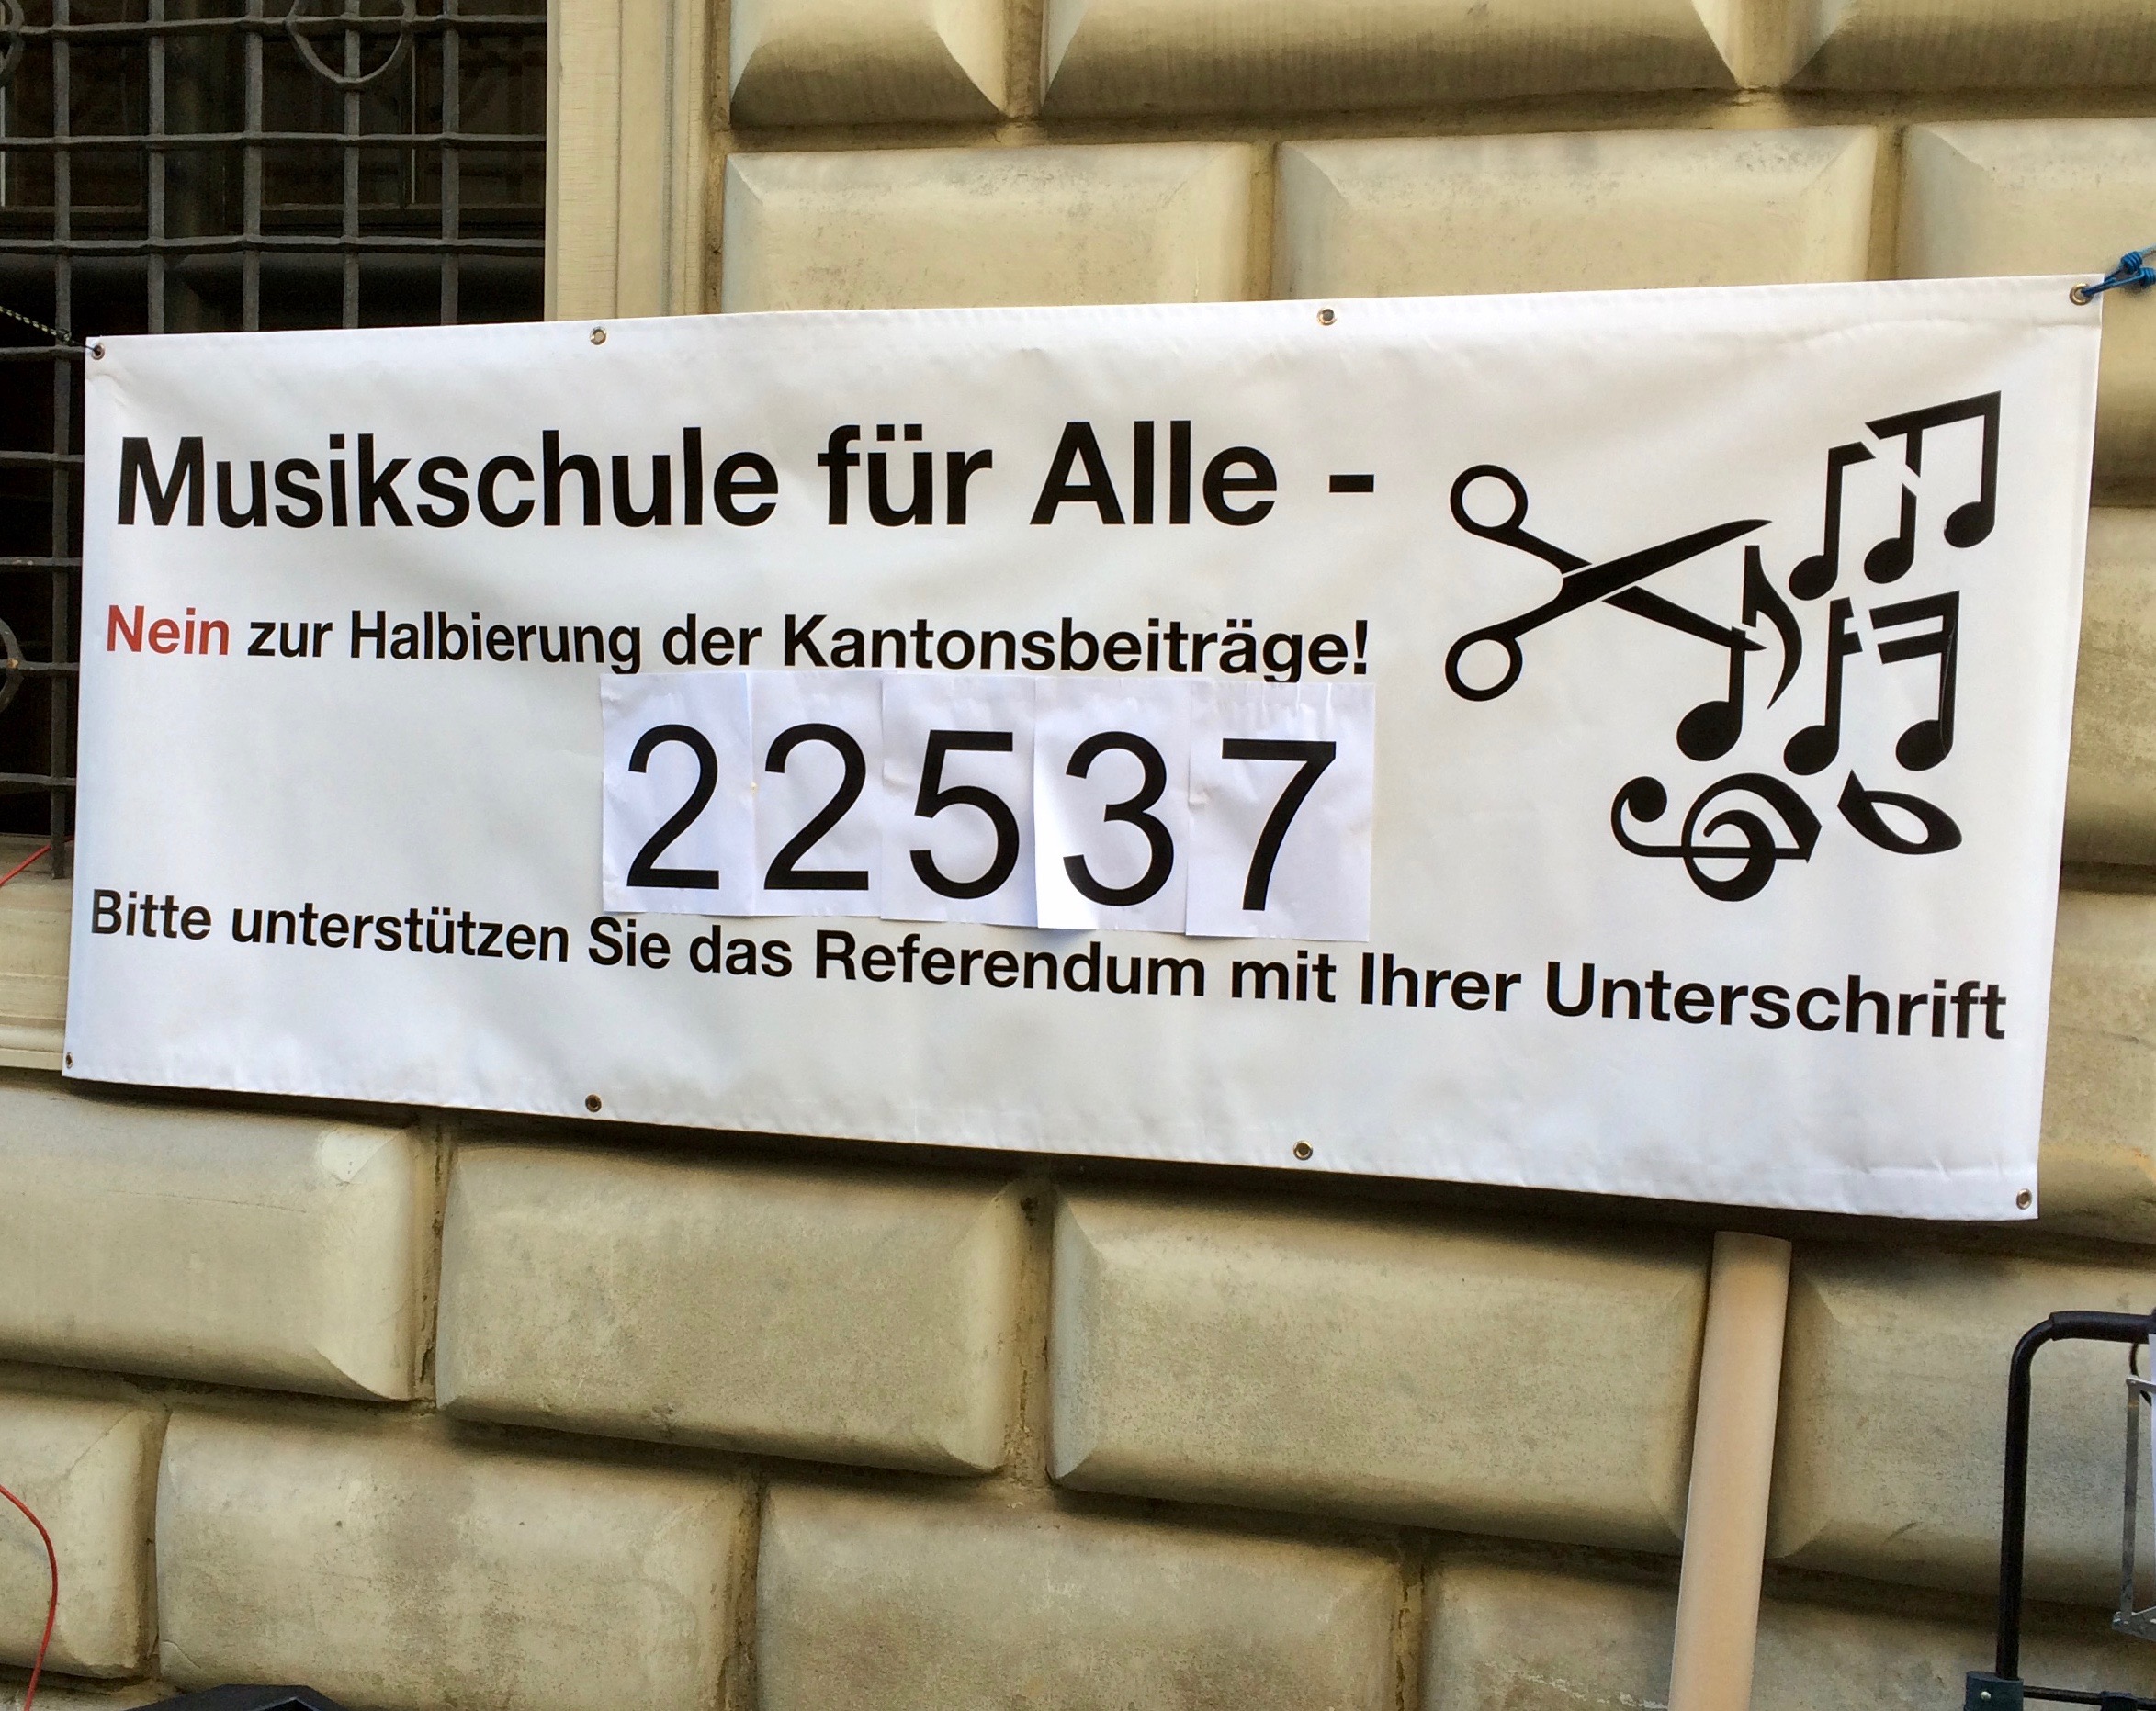 Das ist die Rekordzahl: 22'537 beglaubigte Unterschriften wurden am Mittwoch gegen den Musikschulabbau eingereicht.